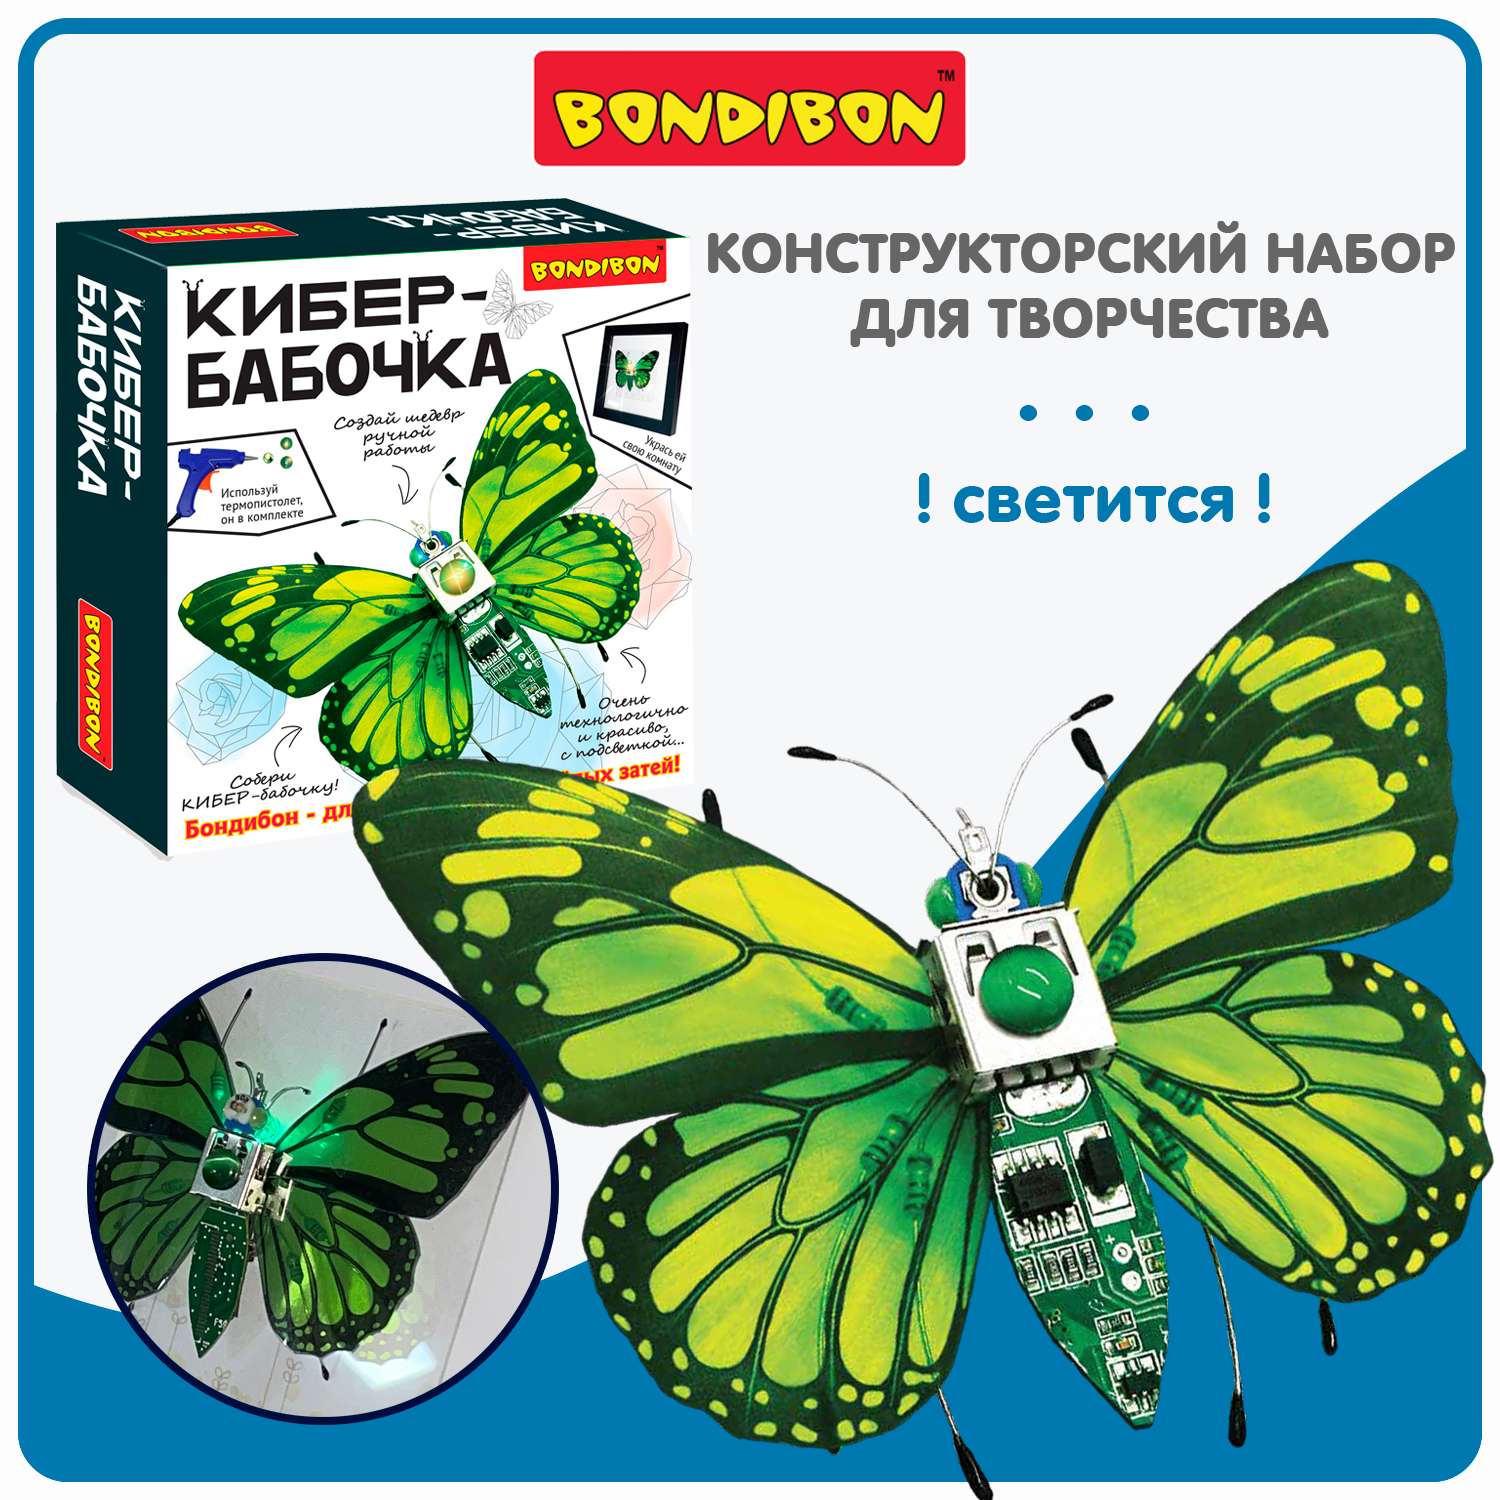 Набор для творчества BONDIBON картина Кибер-бабочка с подсветкой клеевым пистолетом и элементами электроники - фото 1